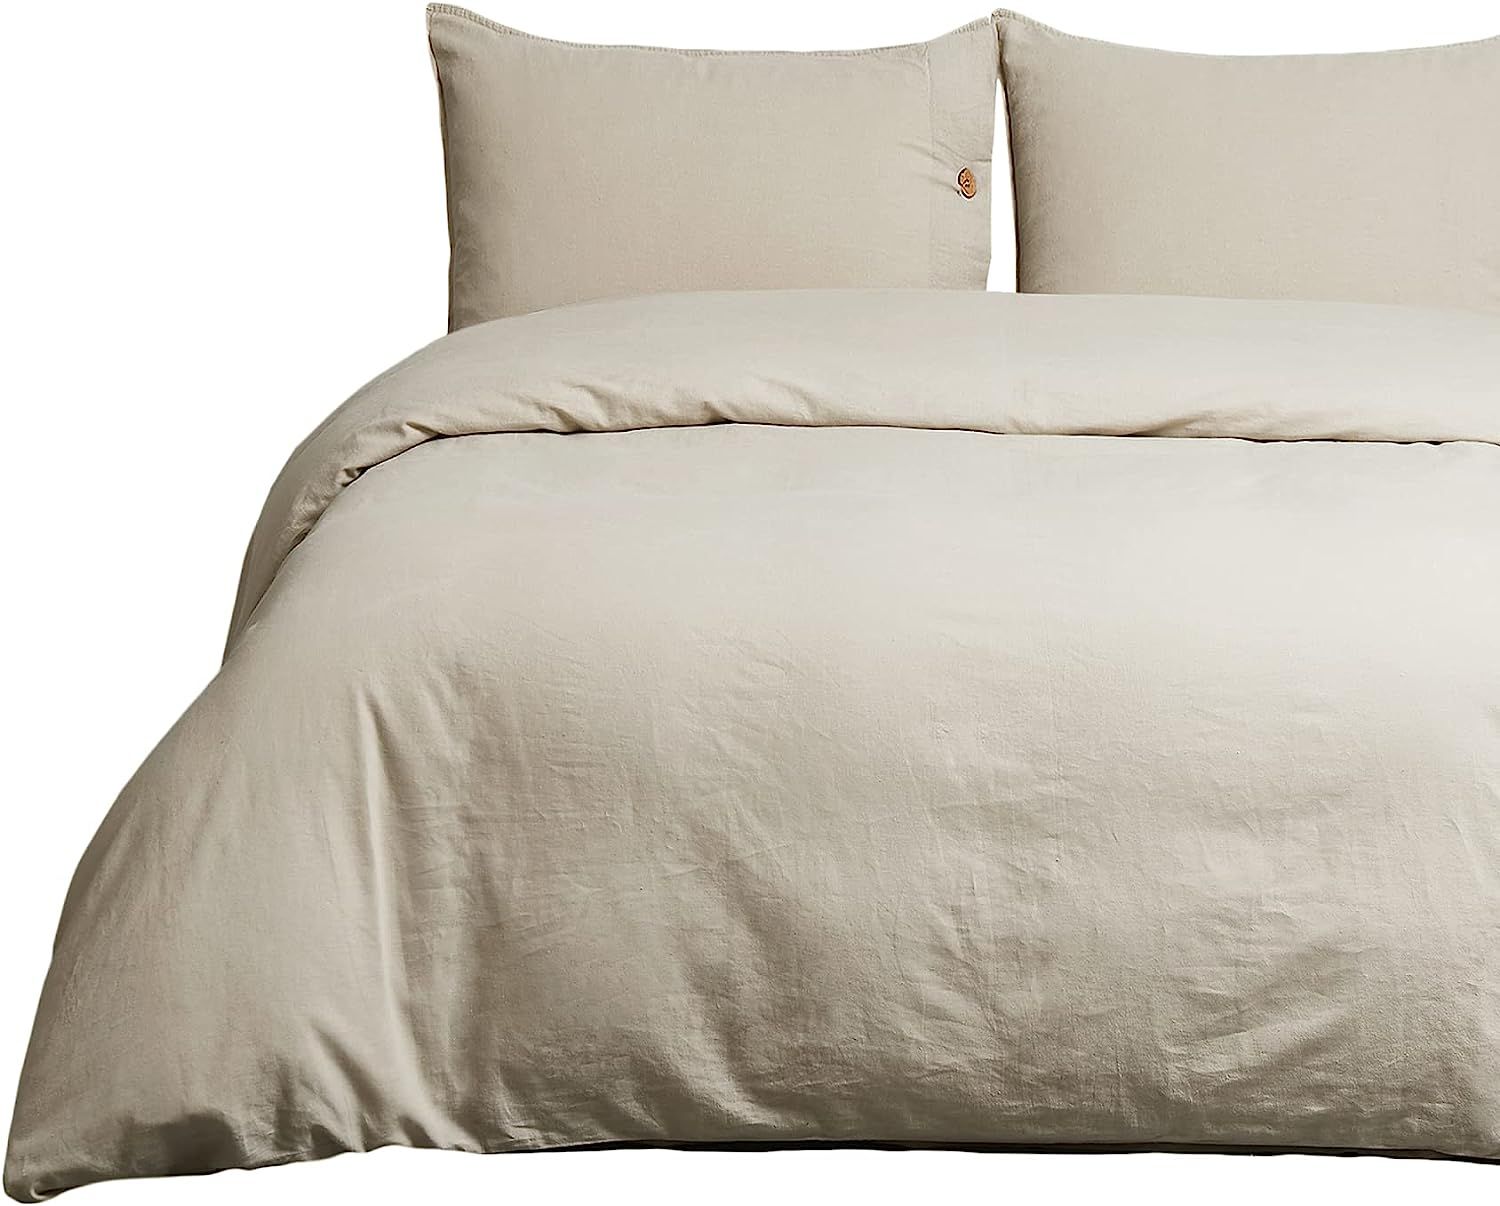 Bedsure Linen Duvet Cover Queen Linen Cotton Blend Duvet Cover Set - 3 Pieces Comforter Cover Set... | Amazon (US)